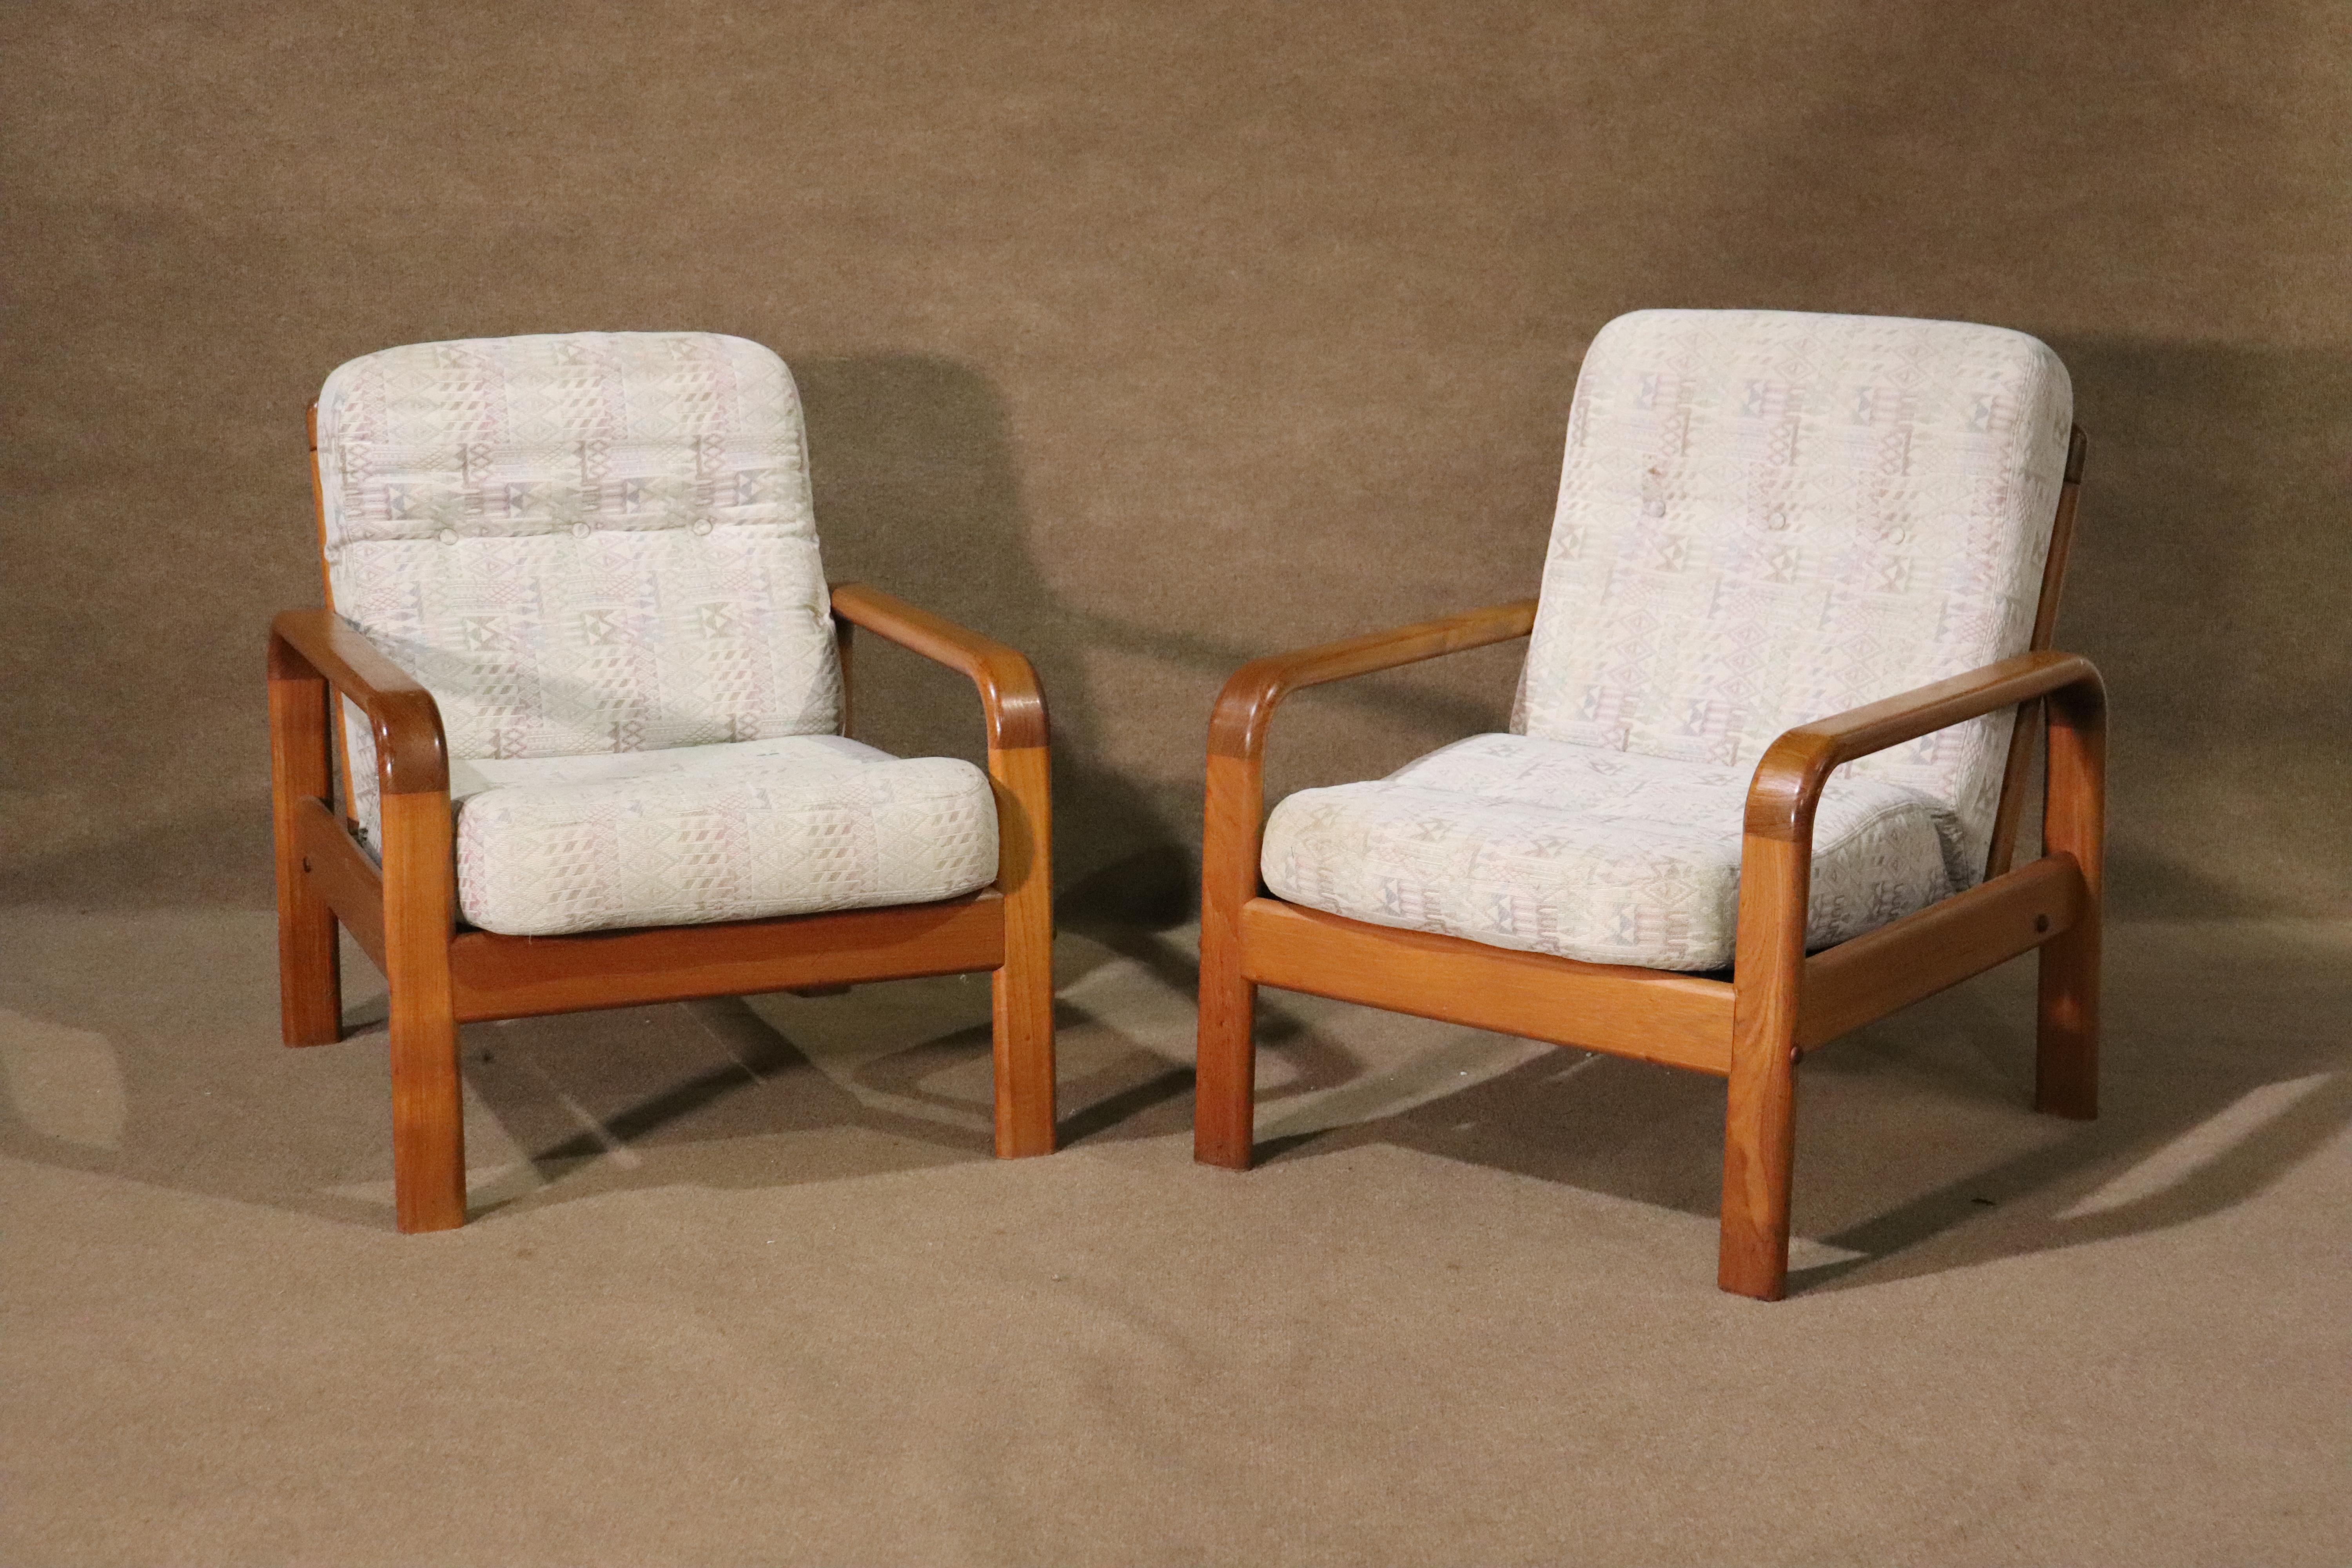 Paire de chaises longues en teck de fabrication danoise du milieu du siècle. Accoudoirs en bois courbé et dossiers en lattes épaisses.
Veuillez confirmer le lieu NY ou NJ